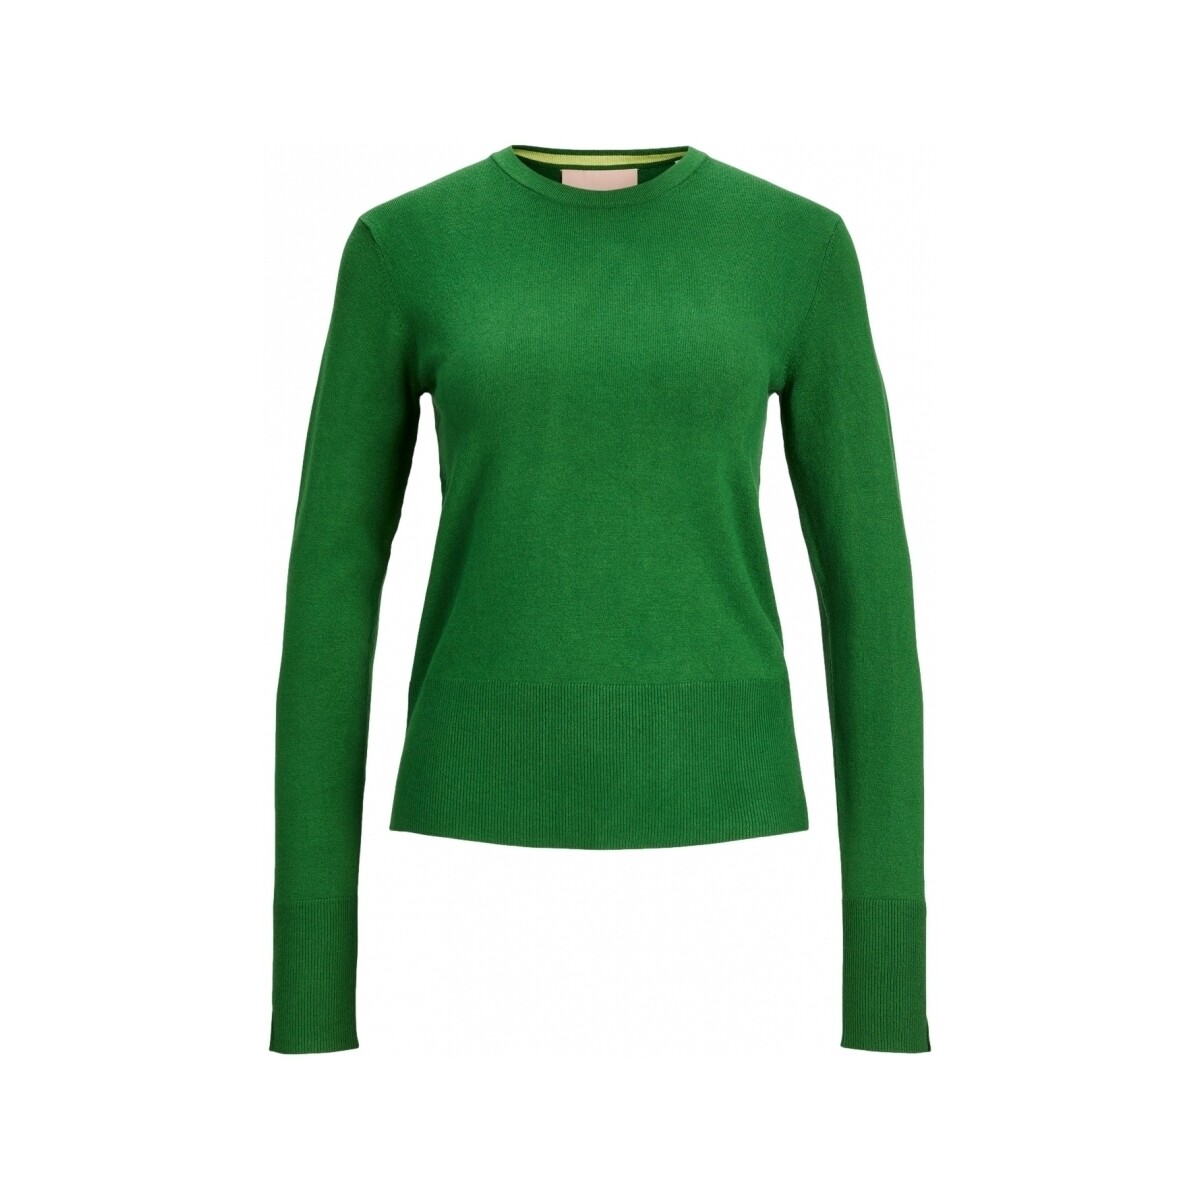 Textil Mulher camisolas Jjxx Noos Malha Lara L/S - Formal Green Verde